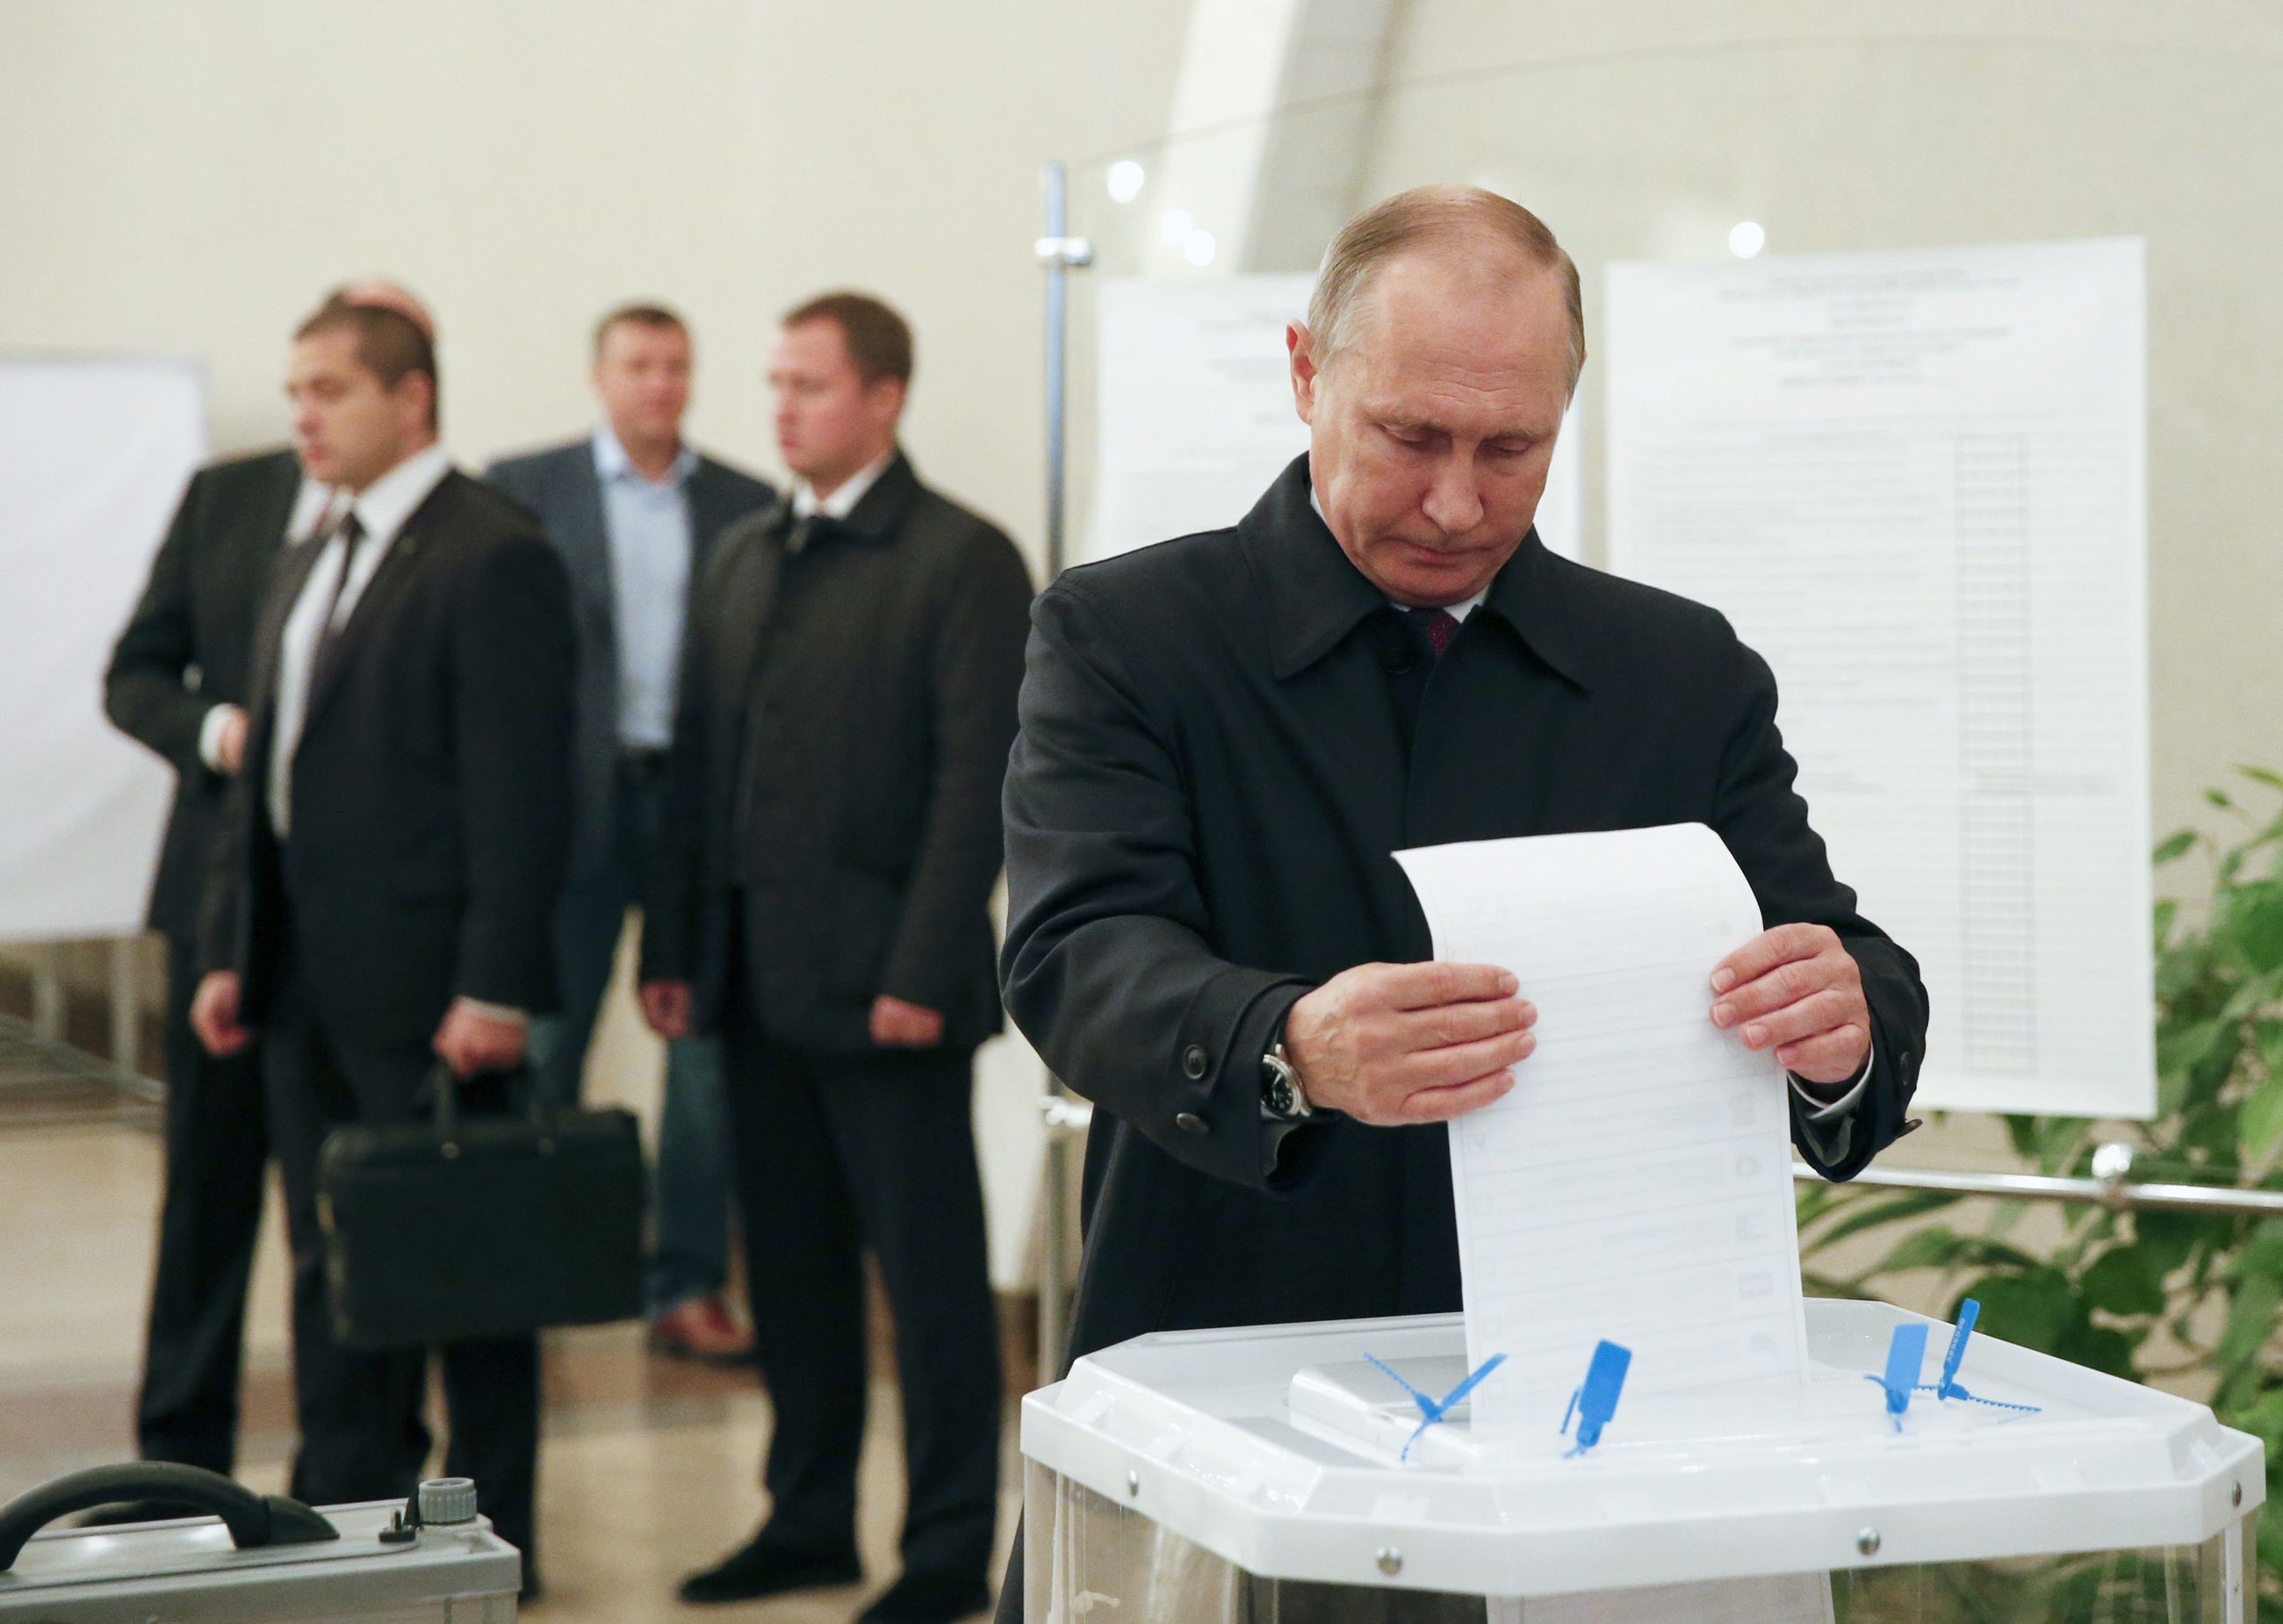 Проголосовал на выборах президента россии гражданин. Люди голосуют. Люди голосуют на выборах.